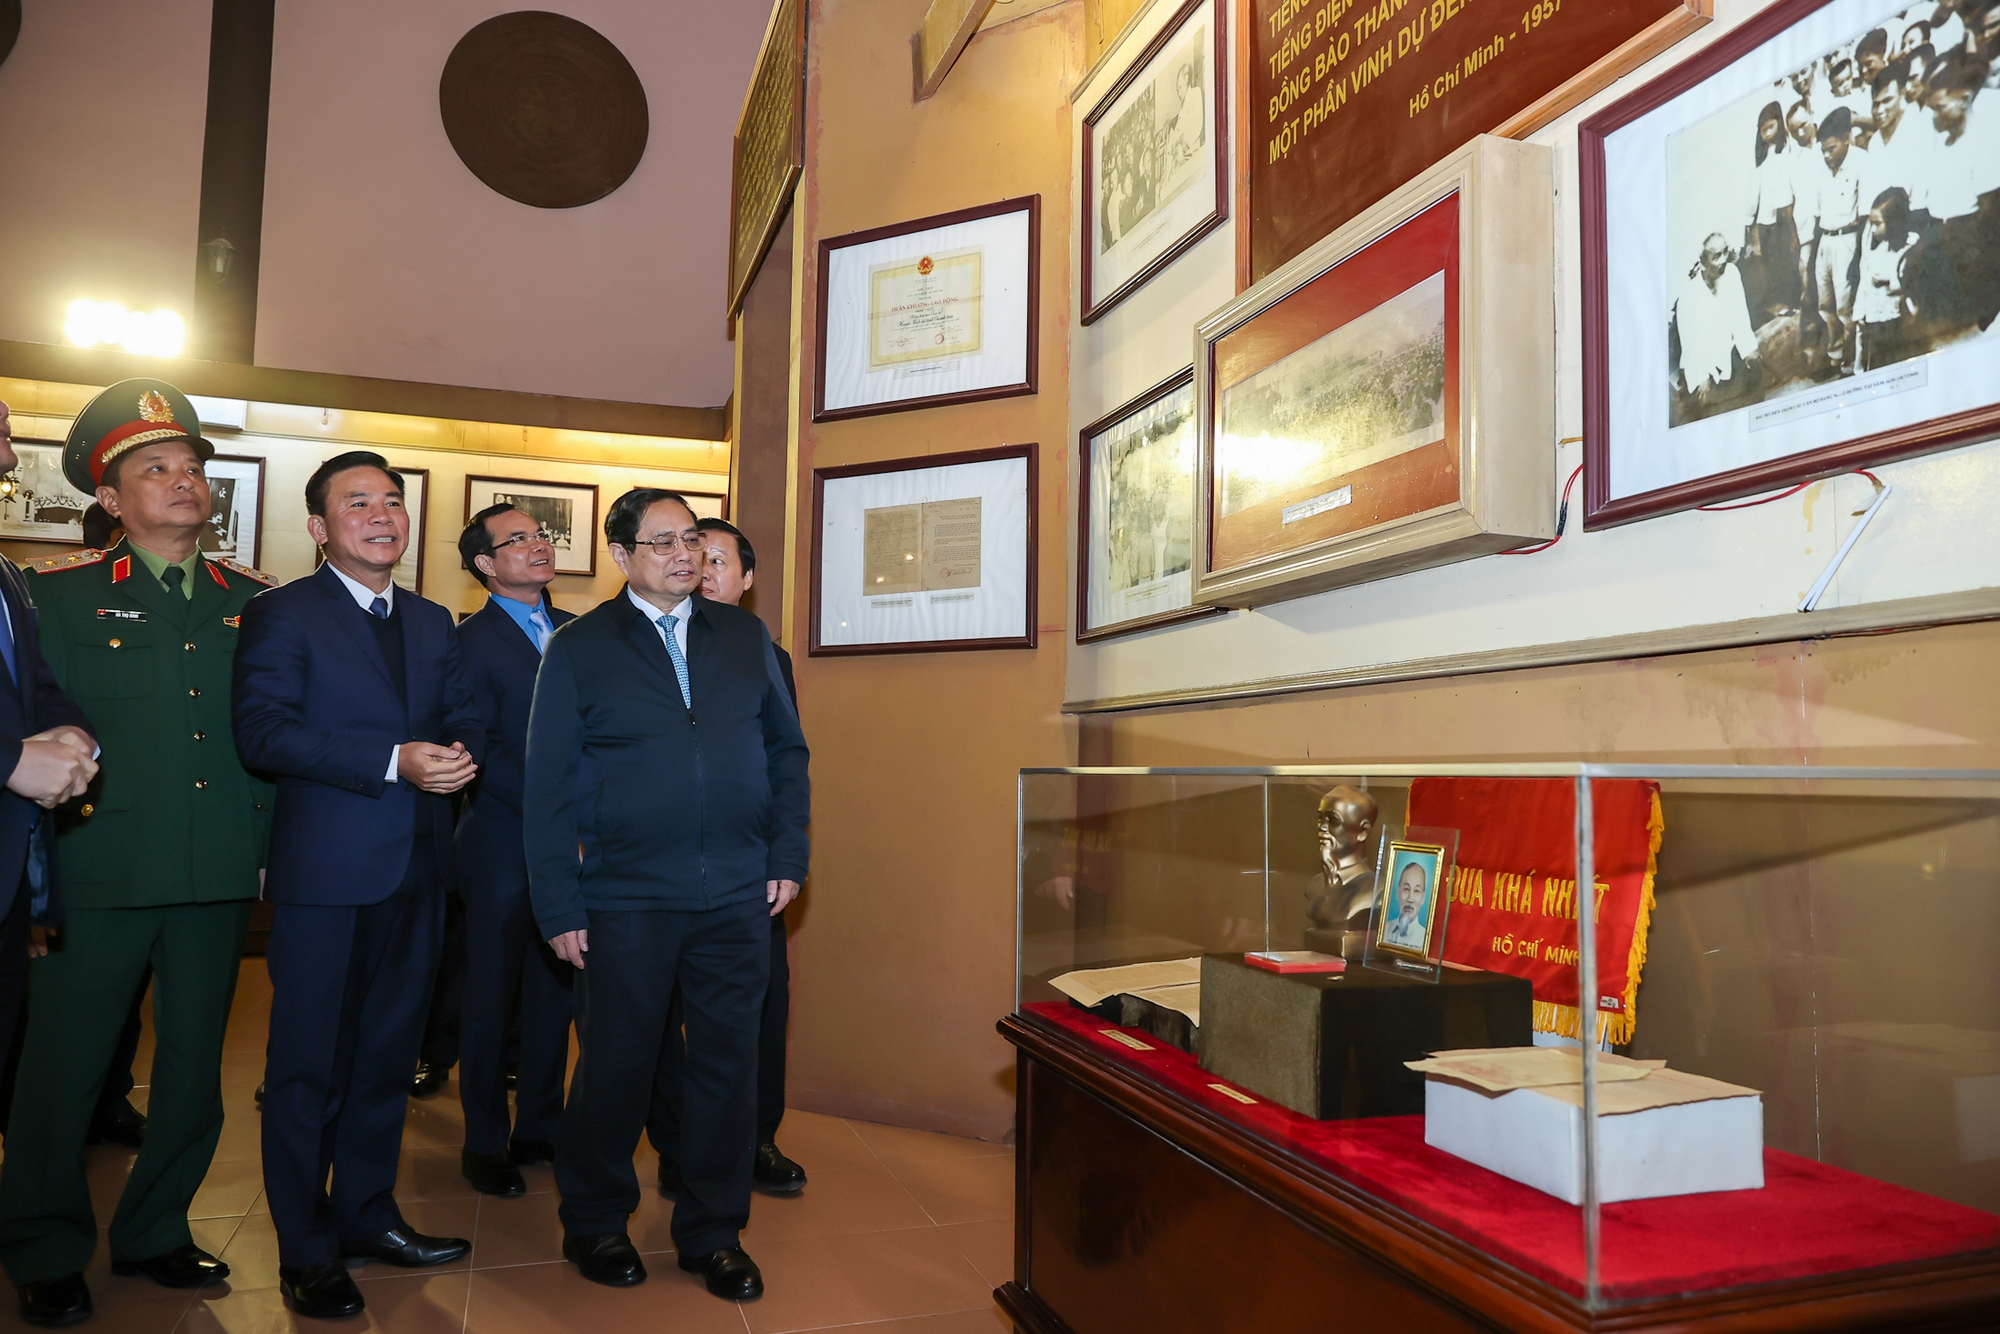 Thủ tướng Chính phủ và đoàn công tác thăm không gian trưng bày tại Khu văn hóa tưởng niệm Chủ tịch Hồ Chí Minh ở thành phố Thanh Hóa - Ảnh: VGP/Nhật Bắc